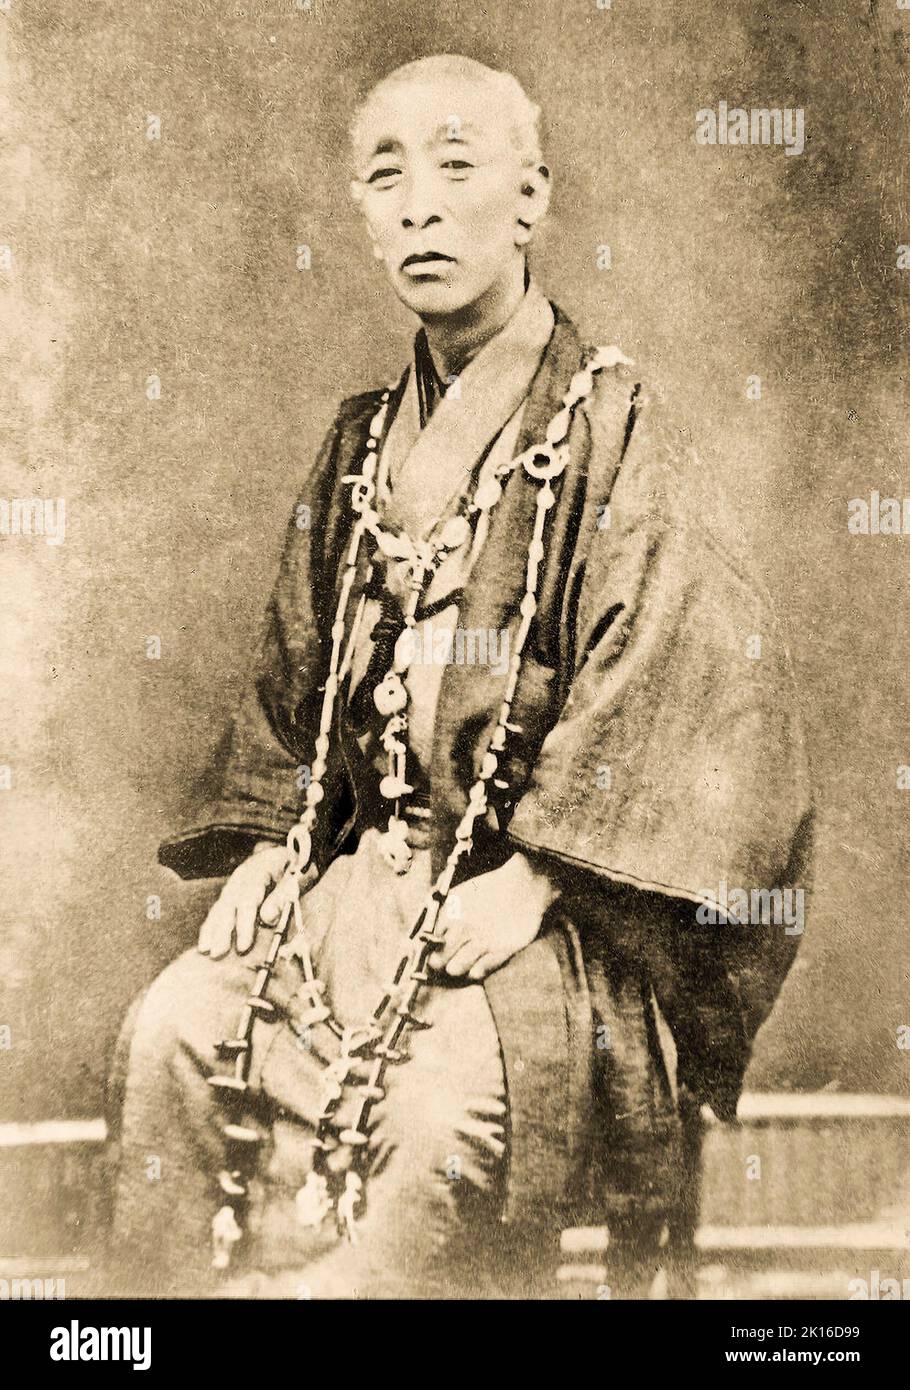 Portrait de Matsuura Takeshirō (1818 -1888), explorateur japonais, cartographe, écrivain, peintre, Prêtre, et antiquaire, un fonctionnaire de la Commission de développement de Hokkaidō au début de la période Meiji. Il a étudié Ezo (aujourd'hui Hokkaido) et inventé le nom 'Hokkaido', et a fait des recherches sur les peuples et la culture Ainu. Banque D'Images